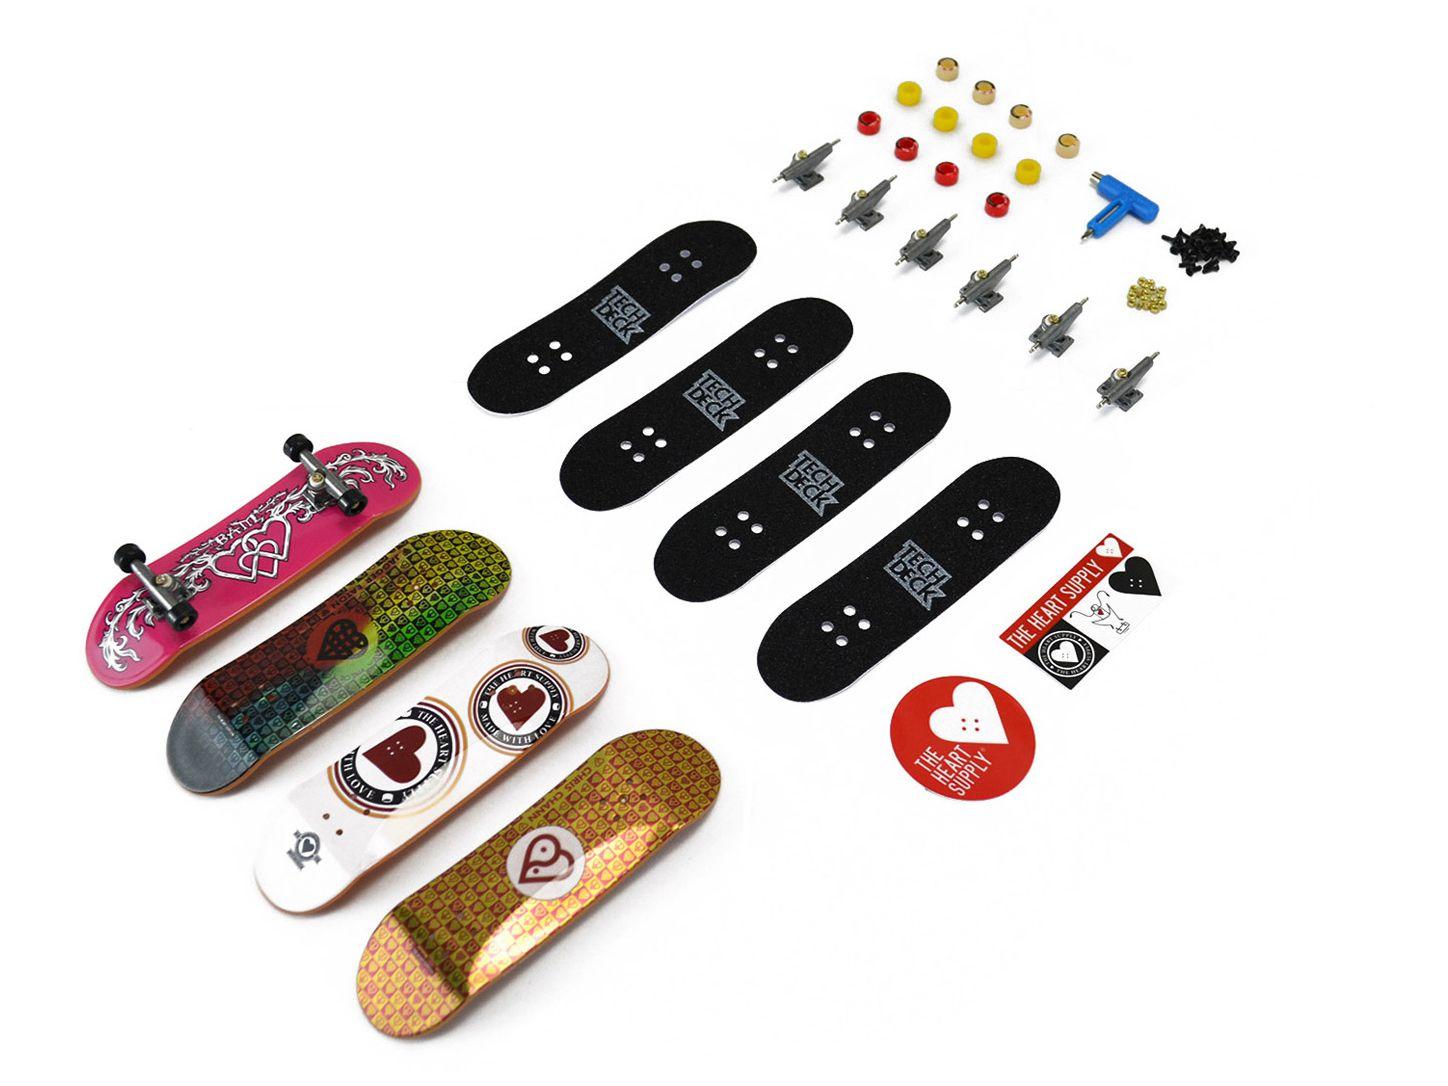 Kit Tech Deck Skate de Dedo com 4 Unidades - Sunny, Shopping, skate de dedo  kit 